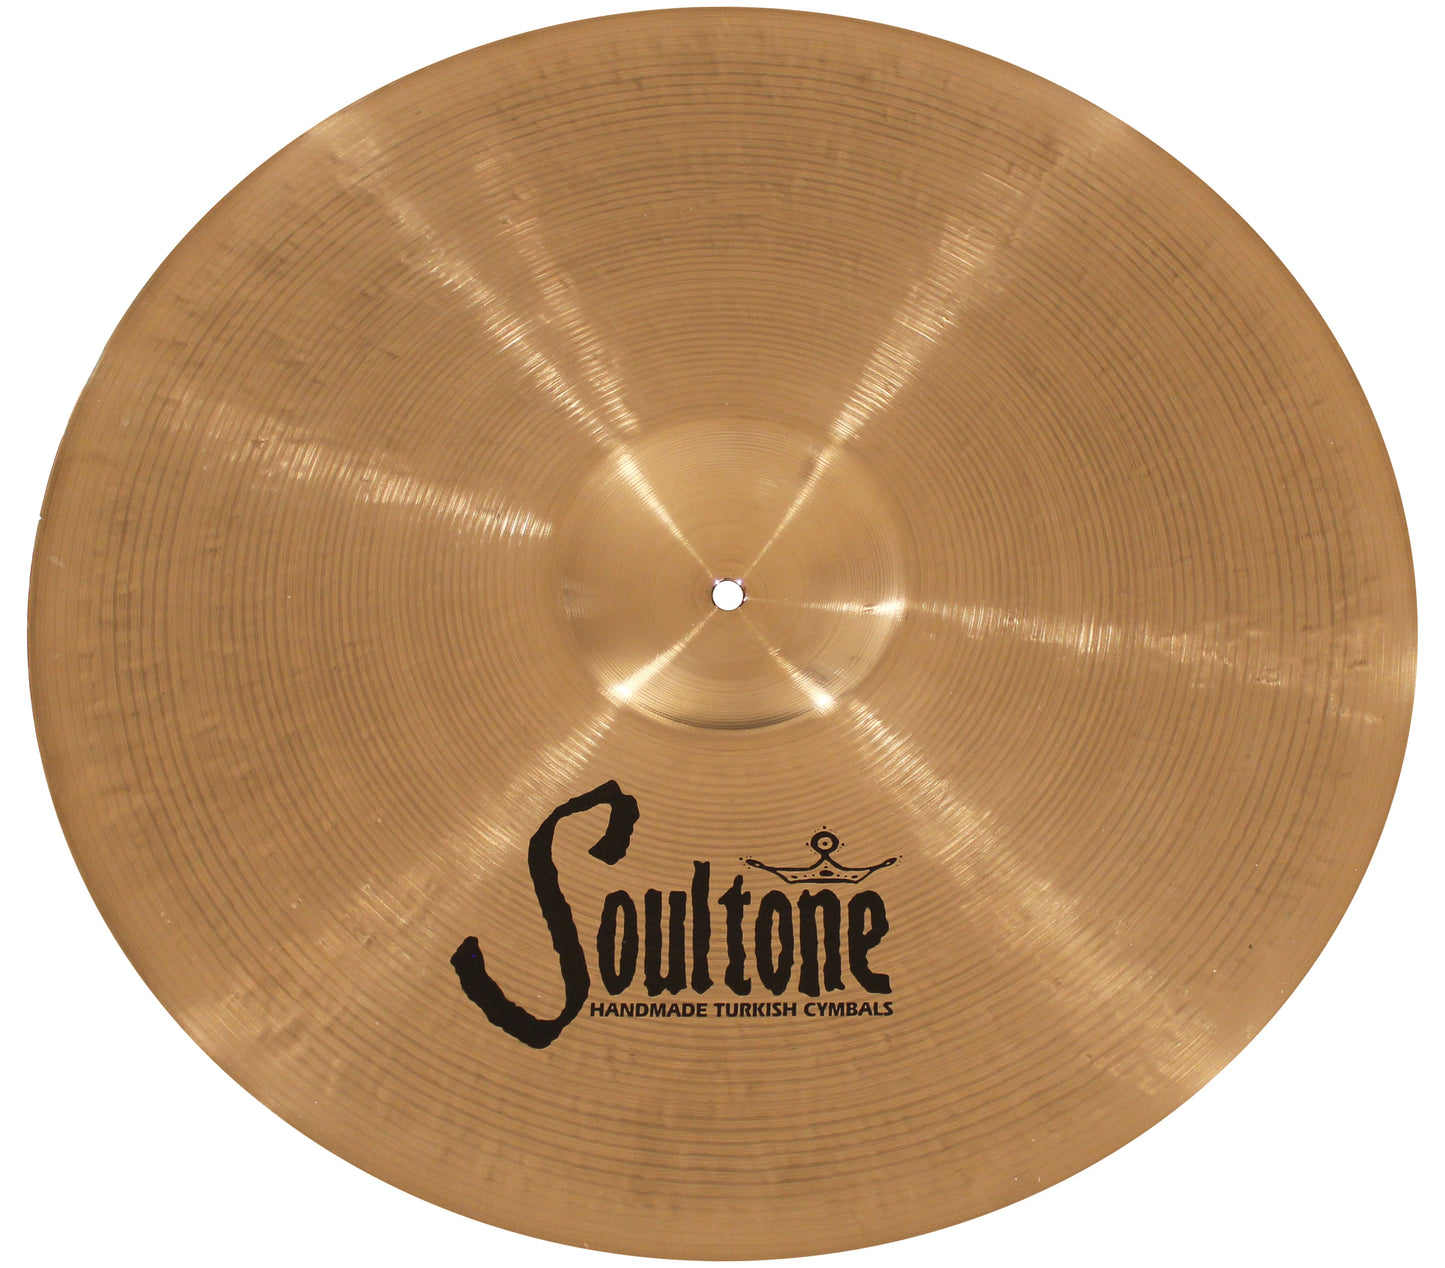 Soultone Cymbals Natural Brilliant with Brilliant Bell Crash